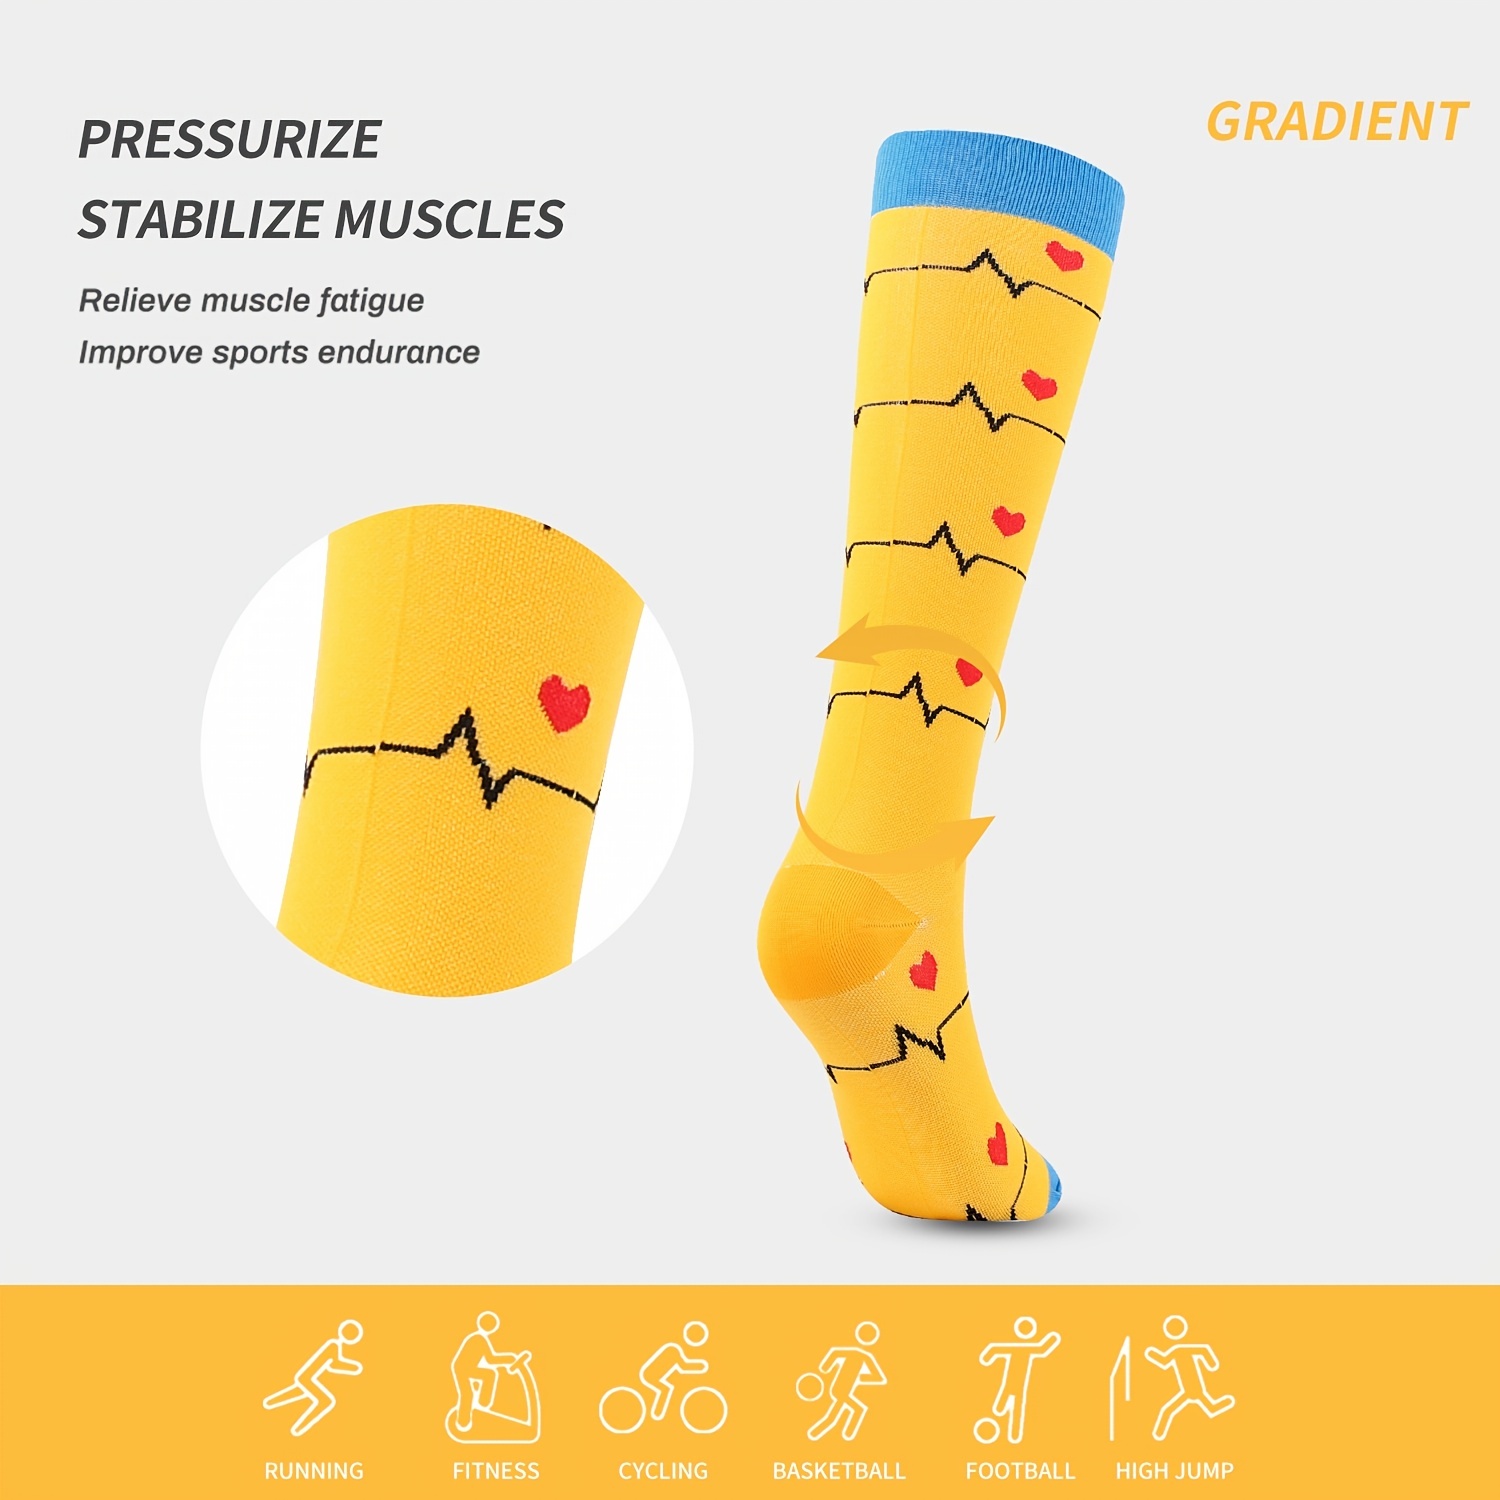 5 pares de calcetines de compresión hasta la rodilla con patrón novedoso, calcetines  deportivos cómodos para correr en bicicleta, medias y calcetería para mujer  - Temu